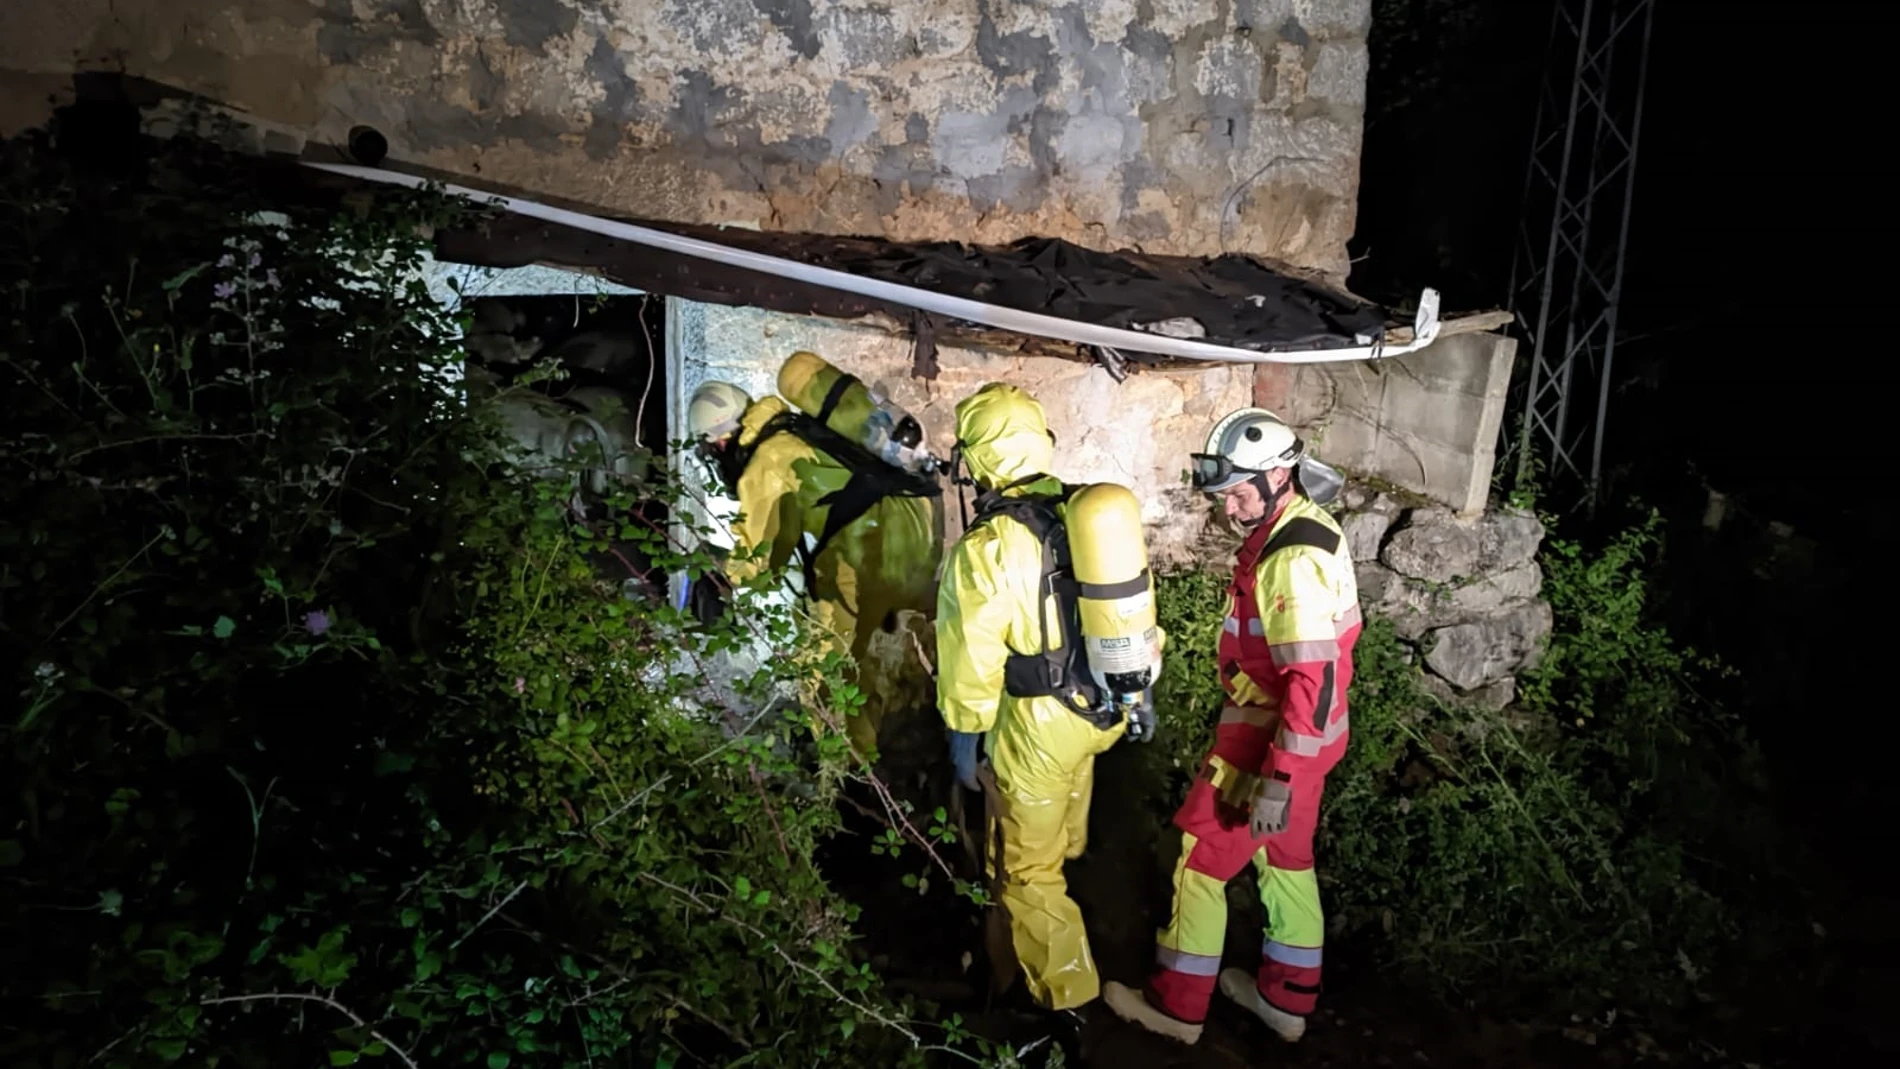 Encuentran más de 30 vacas muertas y con signos de violencia encerradas en una cabaña de Cantabria